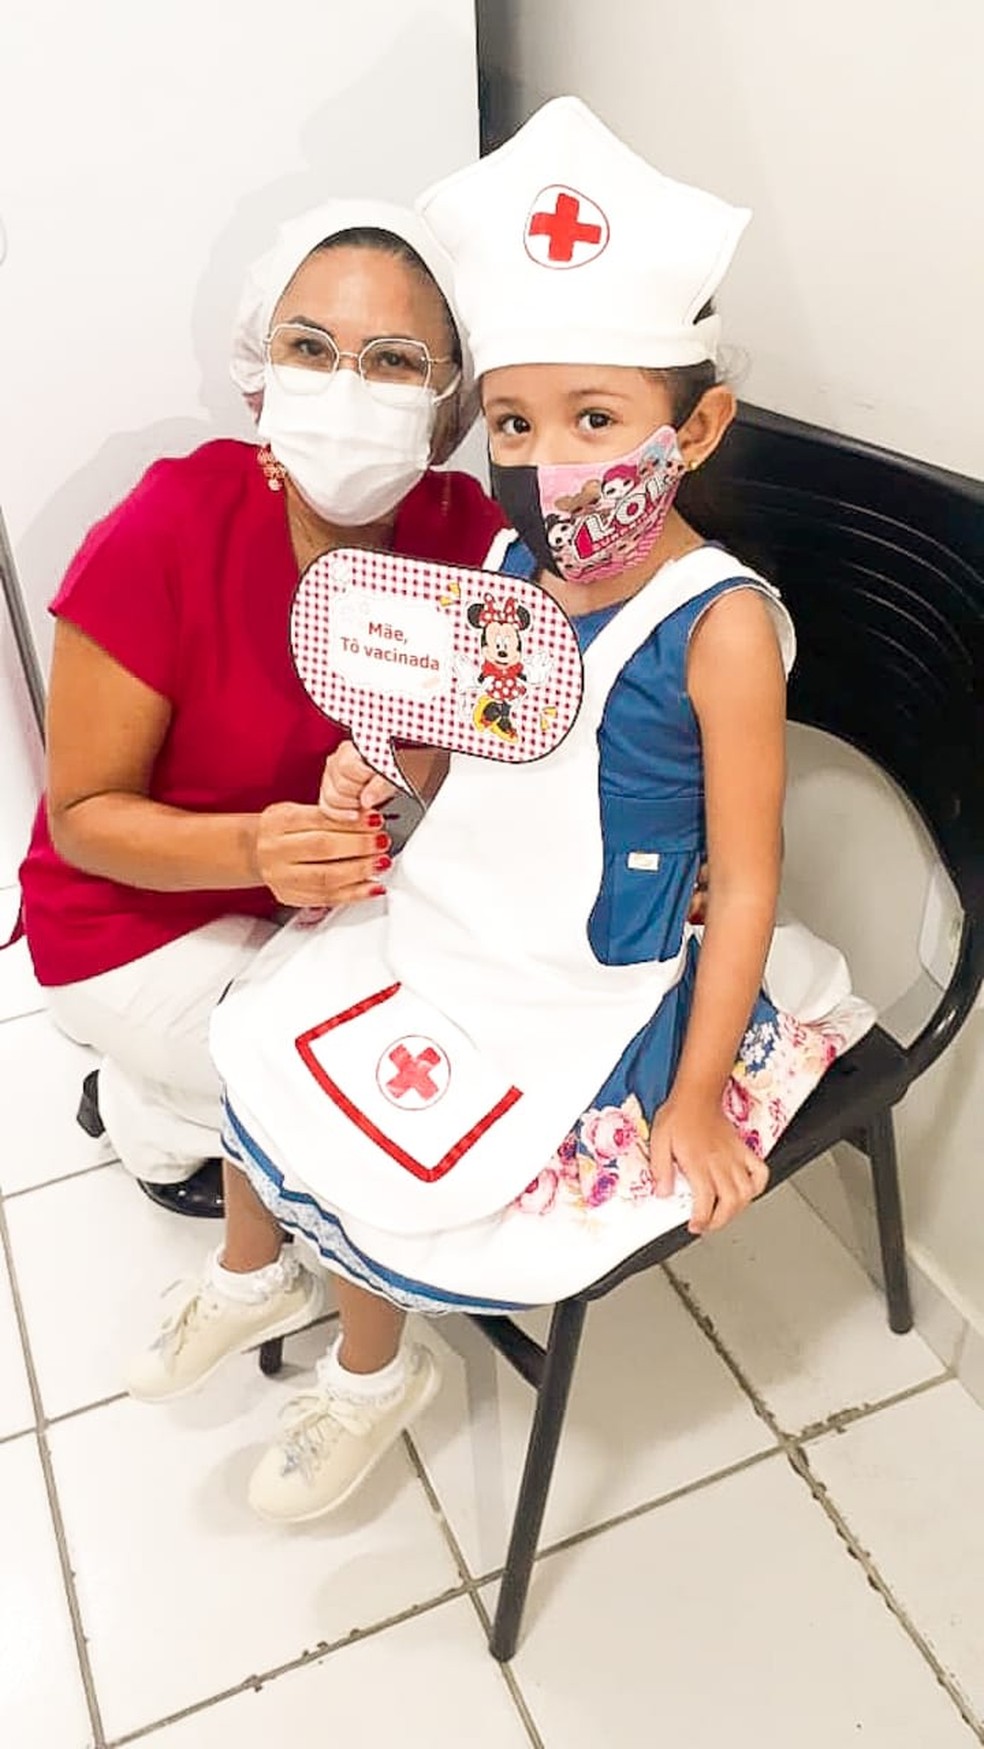 Melyssa Maria de cinco anos se fantasia de enfermeira para vacinação contra Covid em Parnaíba — Foto: Reprodução Pessoal